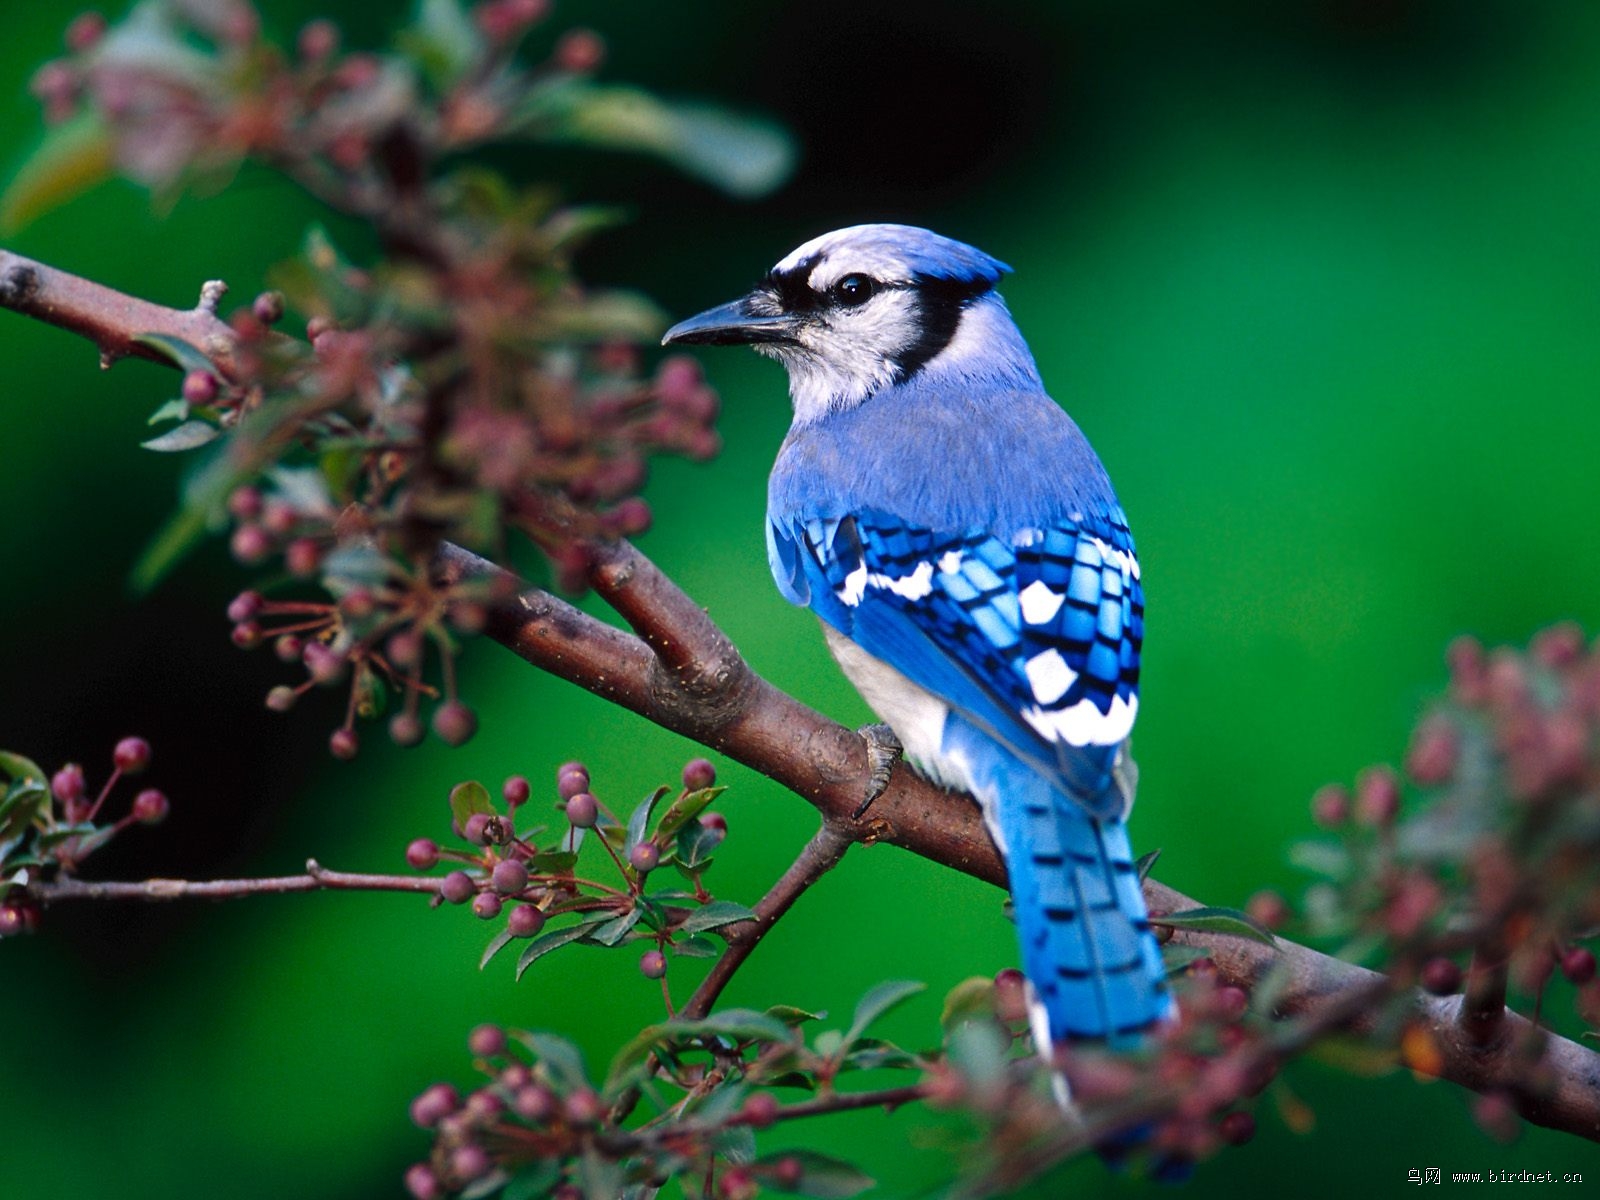 请教老师们这种蓝色的鸟叫什么呢,非常感谢